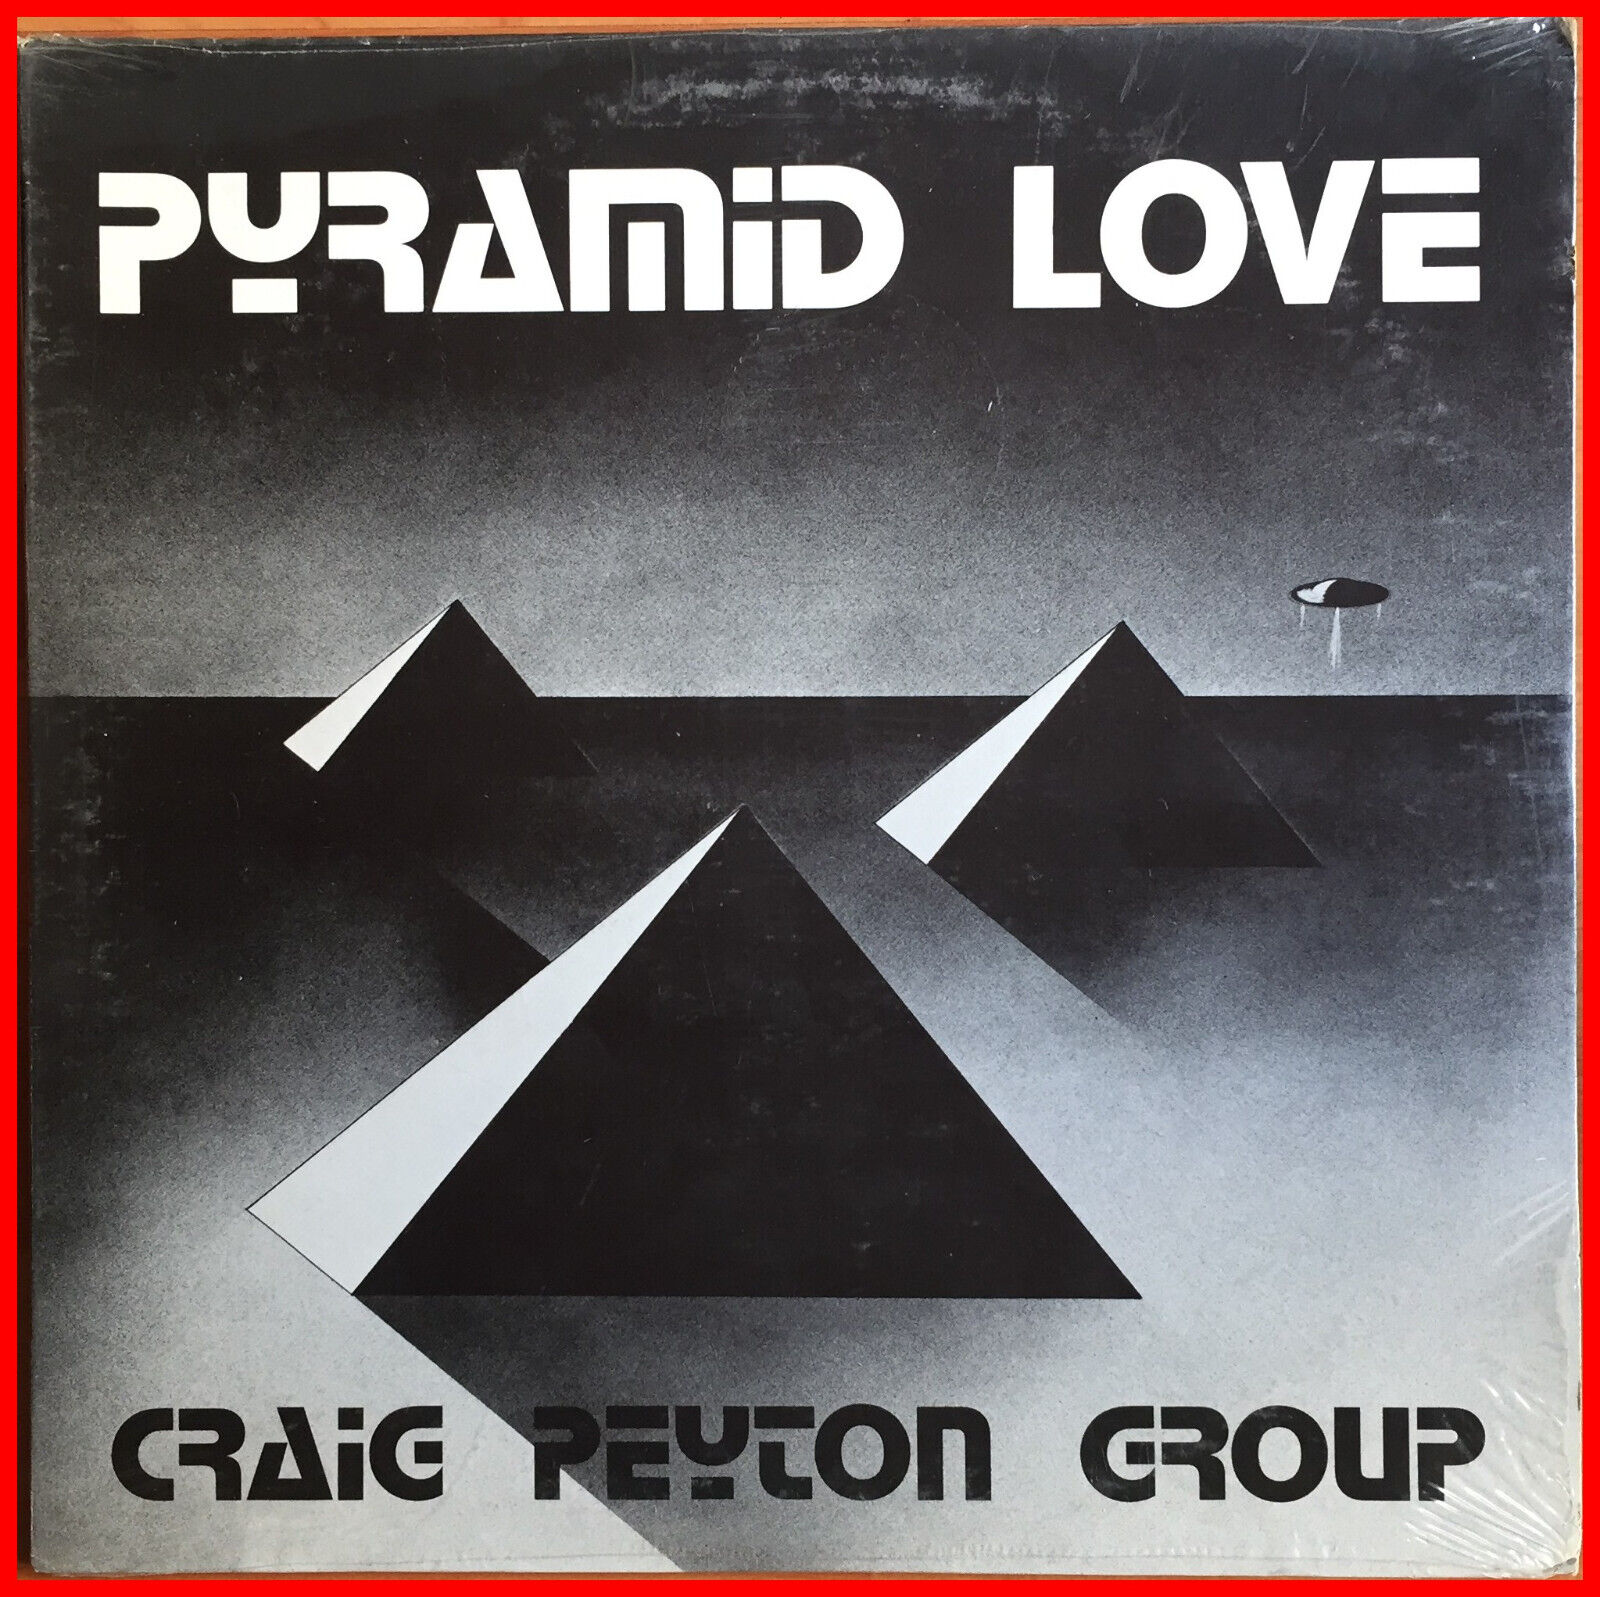 Craig Peyton Group	